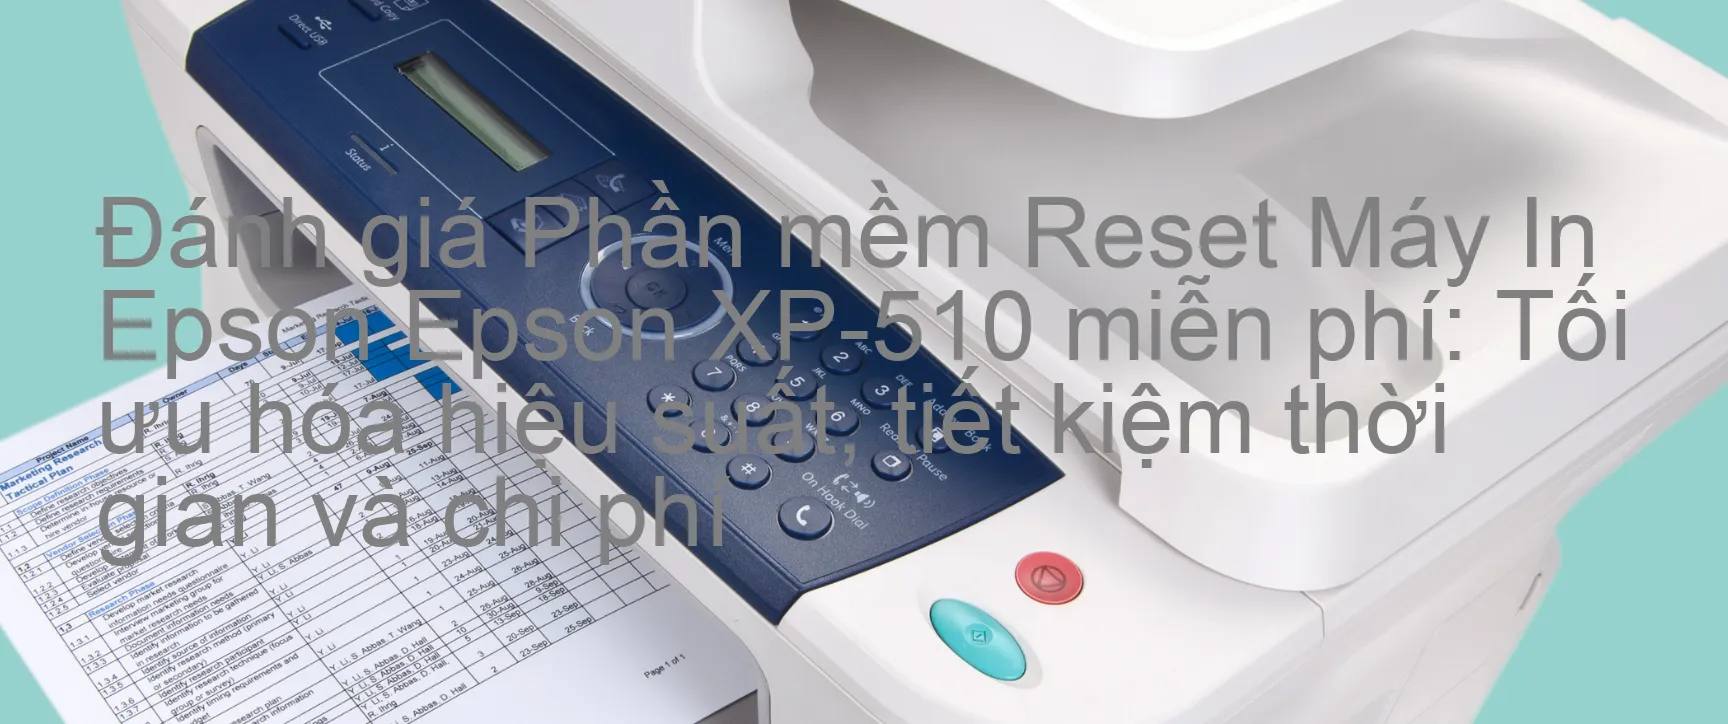 Đánh Giá phần mềm Reset Epson XP-510 Miễn Phí